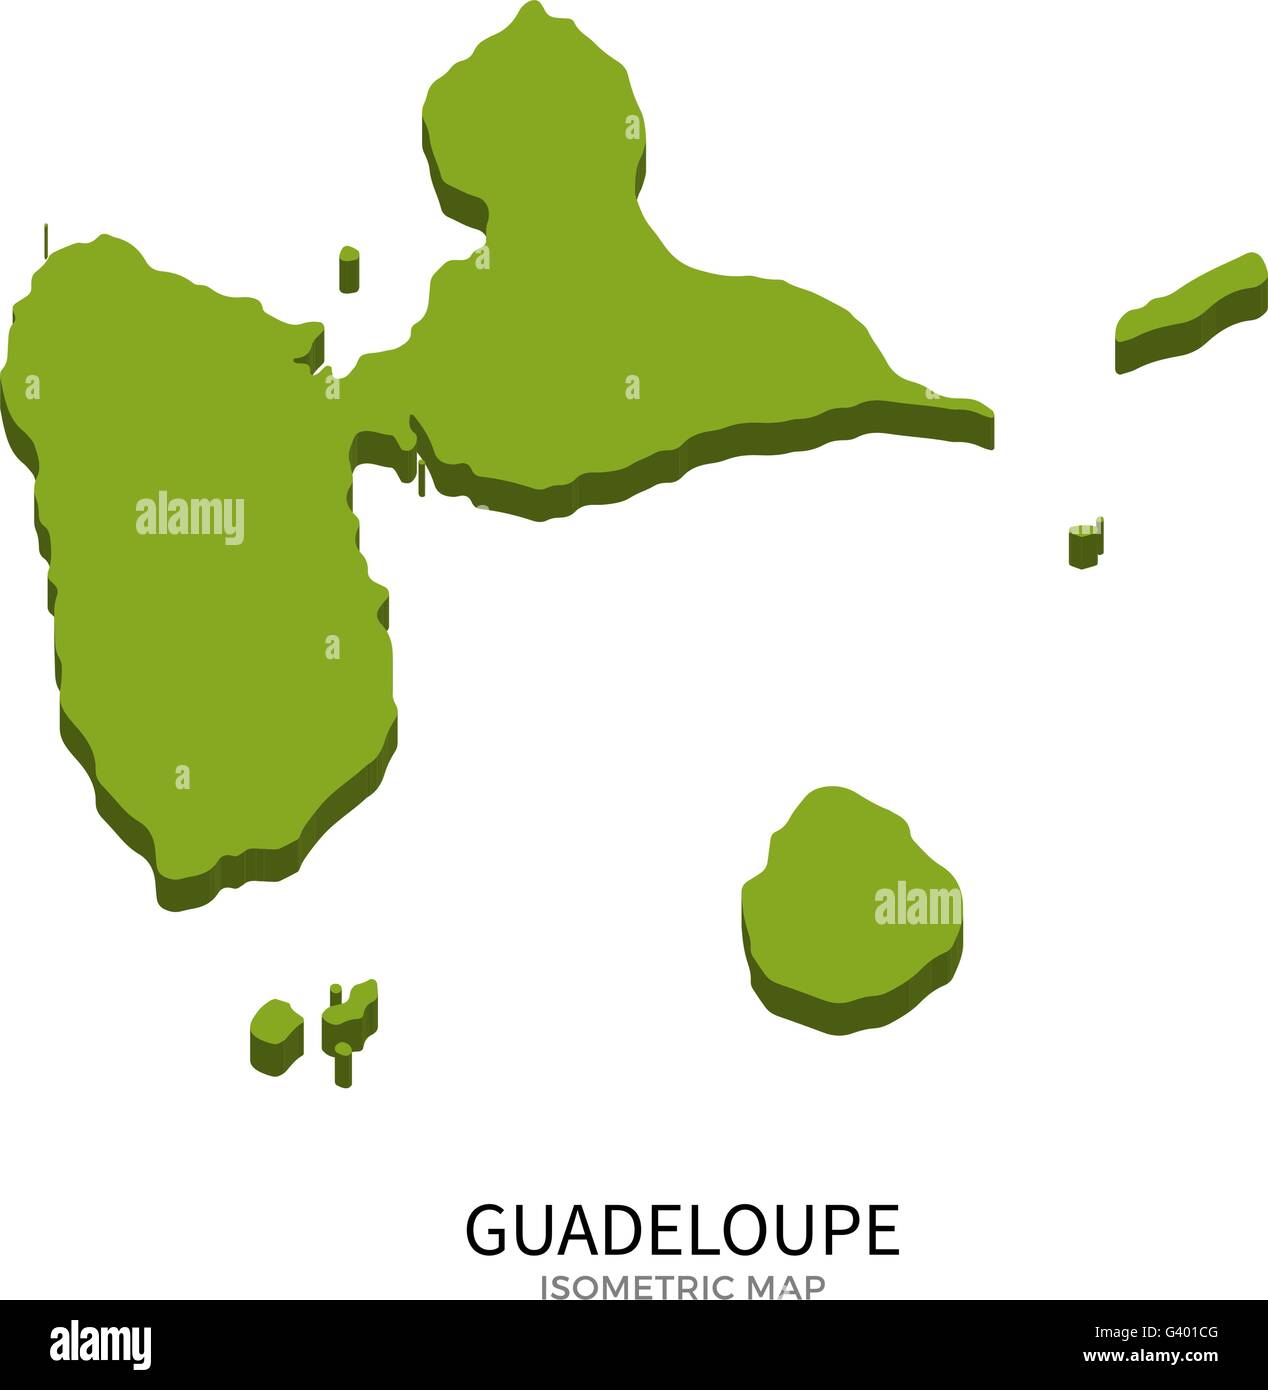 Carte isométrique de la Guadeloupe d'illustration vectorielle détaillée Illustration de Vecteur